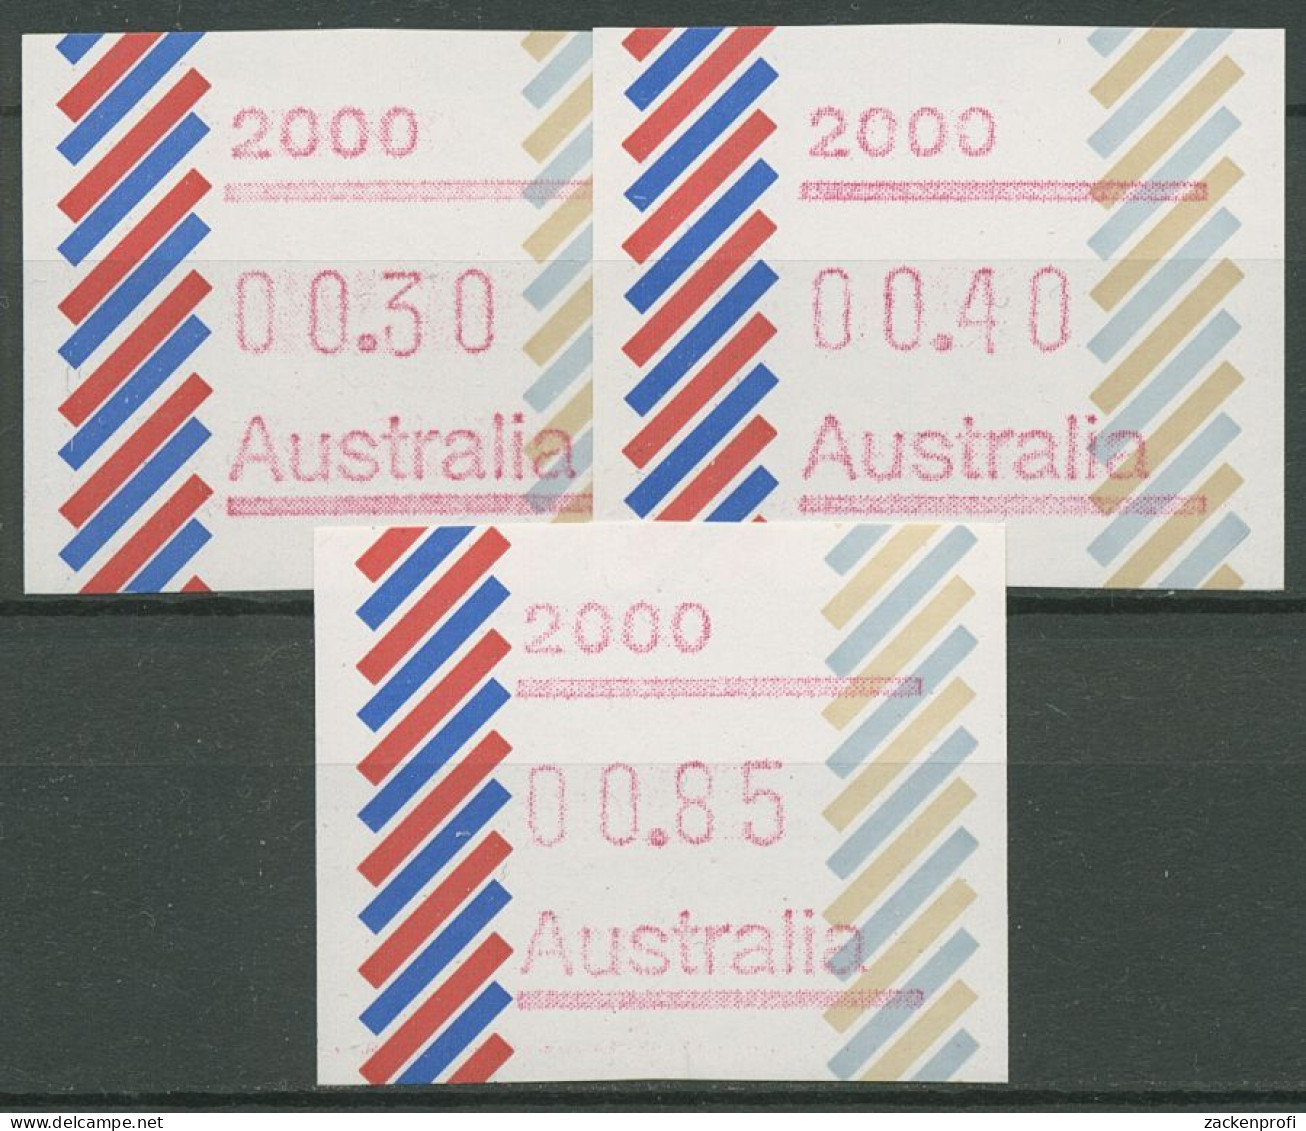 Australien 1984 Balken Tastensatz Automatenmarke 1 S1, 2000 Postfrisch - Automatenmarken [ATM]